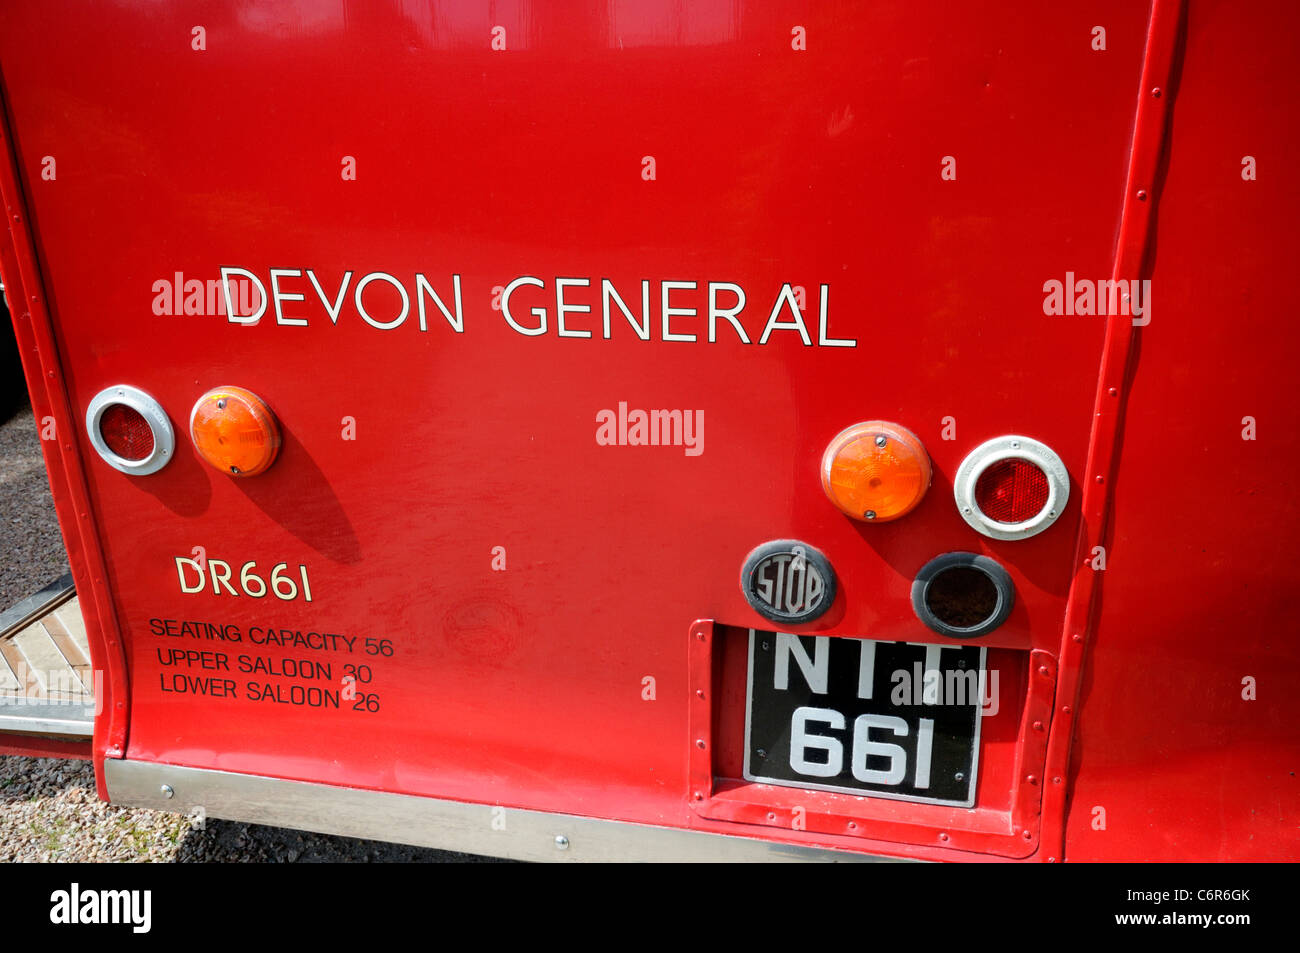 Classic Devon General Double Decker Bus on Display at Dawlish Warren in Devon Stock Photo